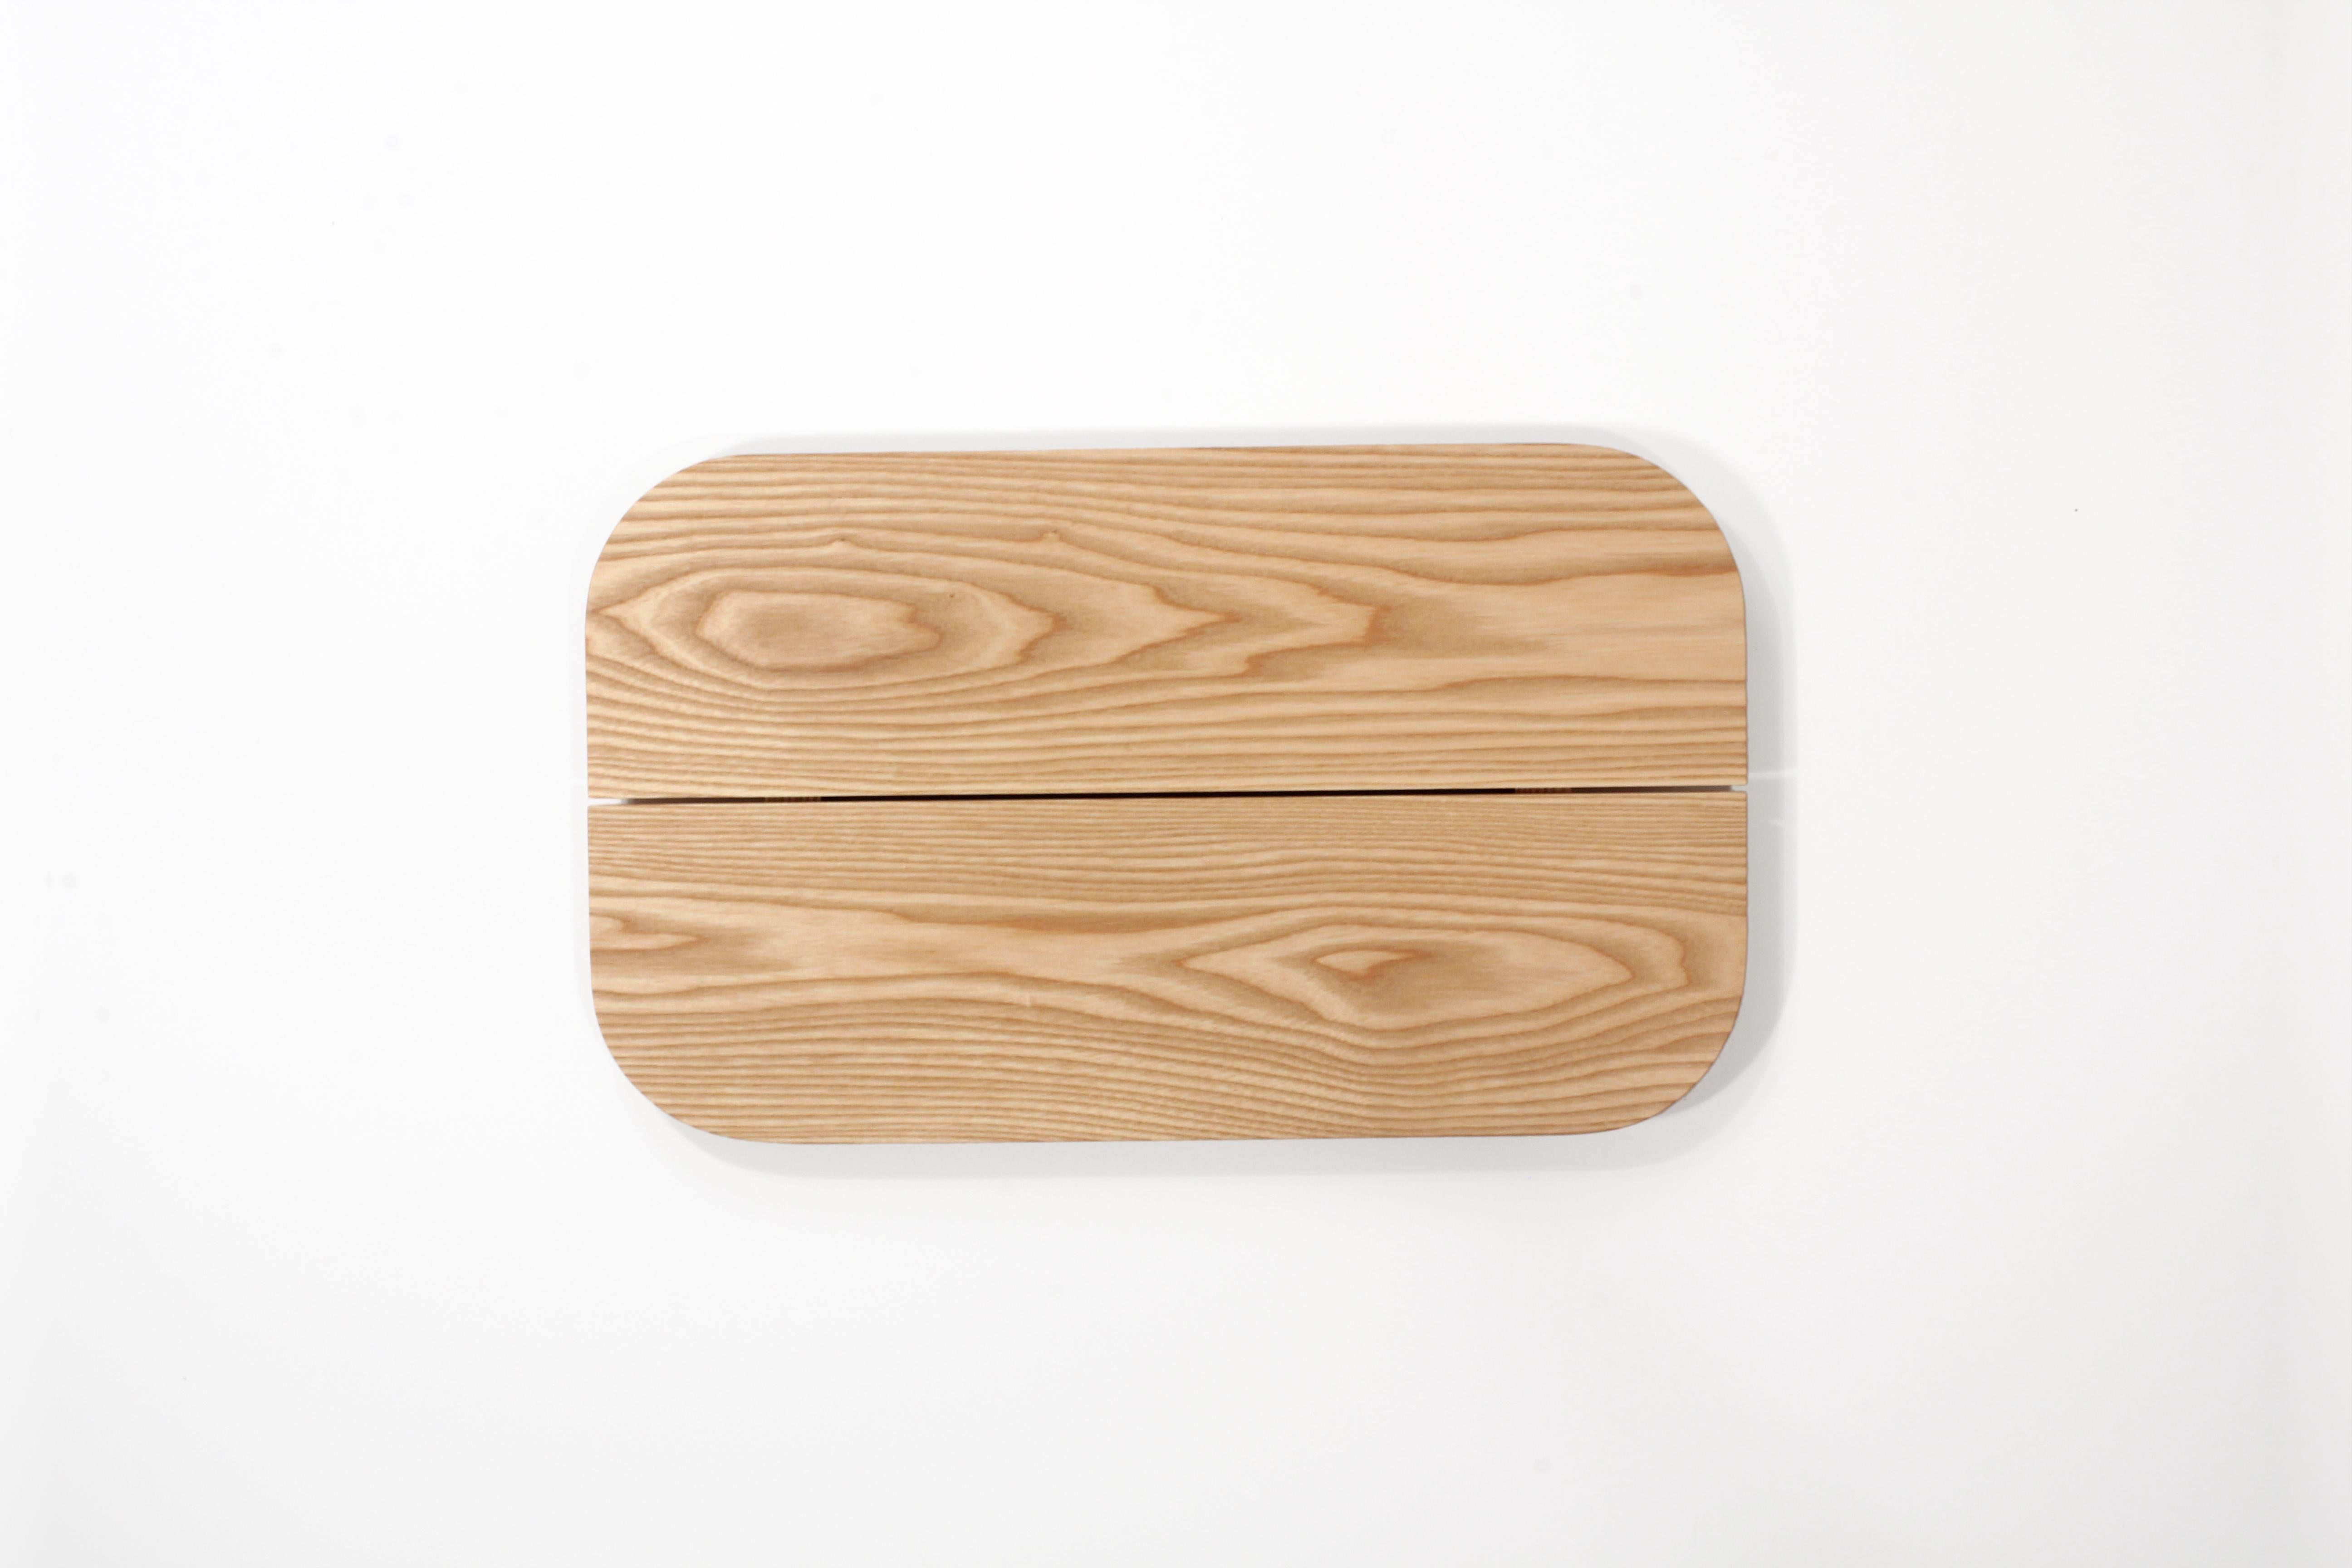 Plank Tray Natural Minimal Modern Ash Serving Pedestal Display Object (Moderne)